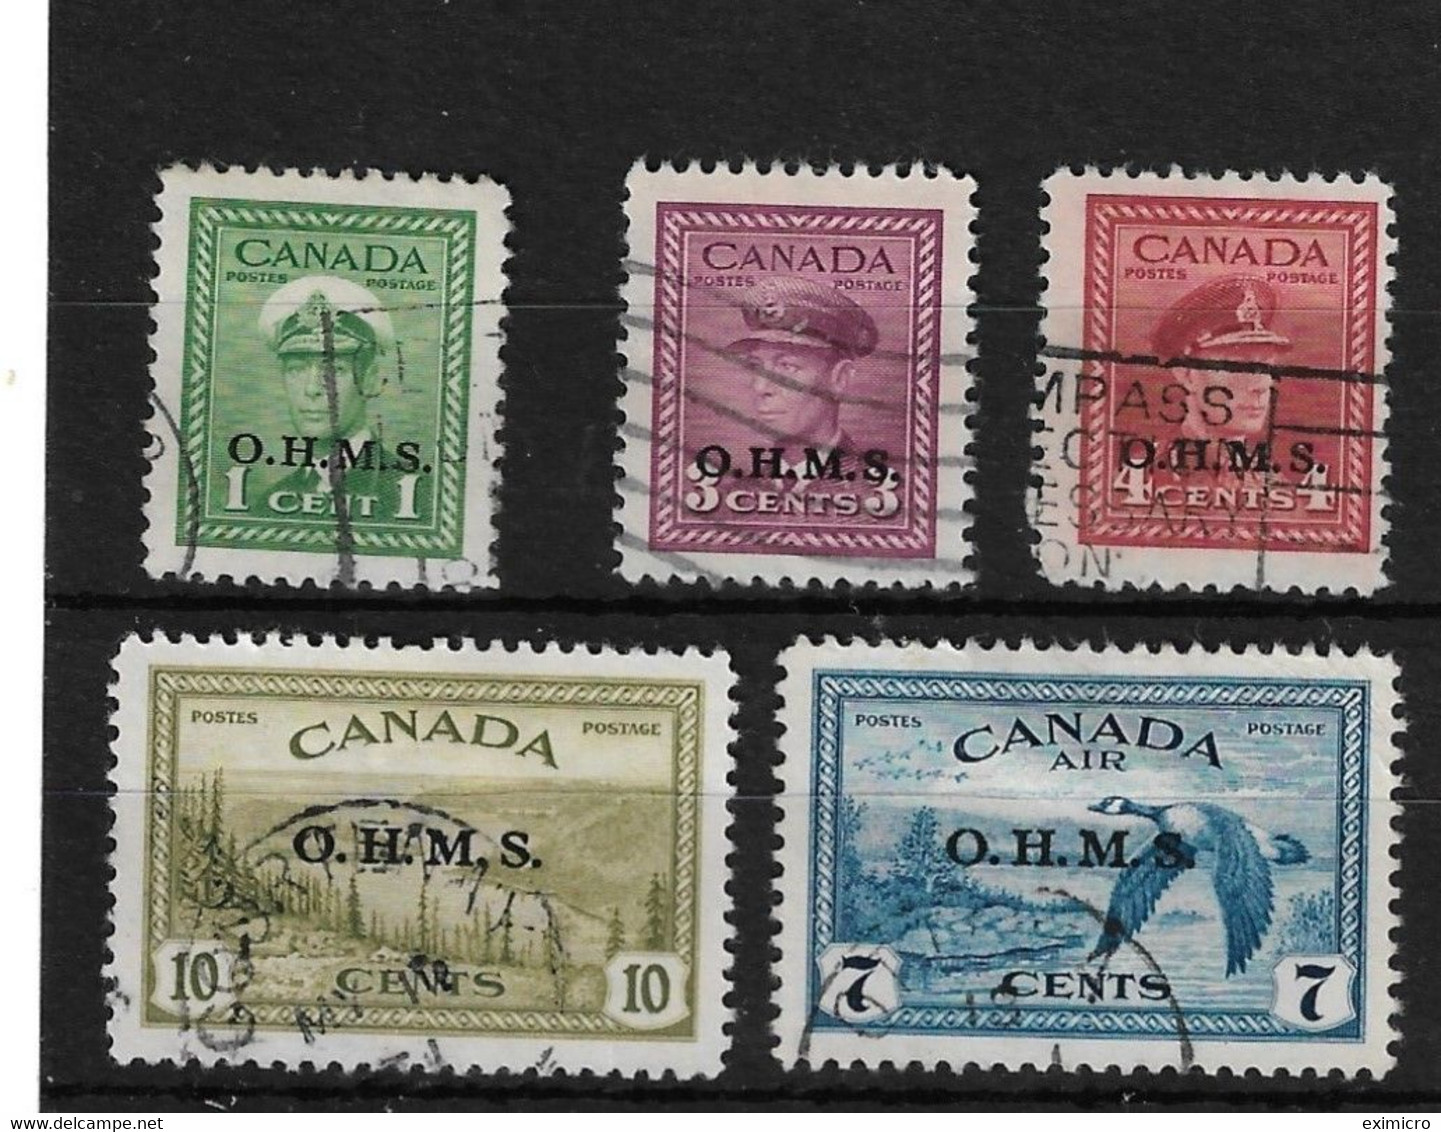 CANADA 1949 O.H.M.S. OFFICIALS SG O162, O164 - O166, O171 FINE USED Cat £40+ - Aufdrucksausgaben